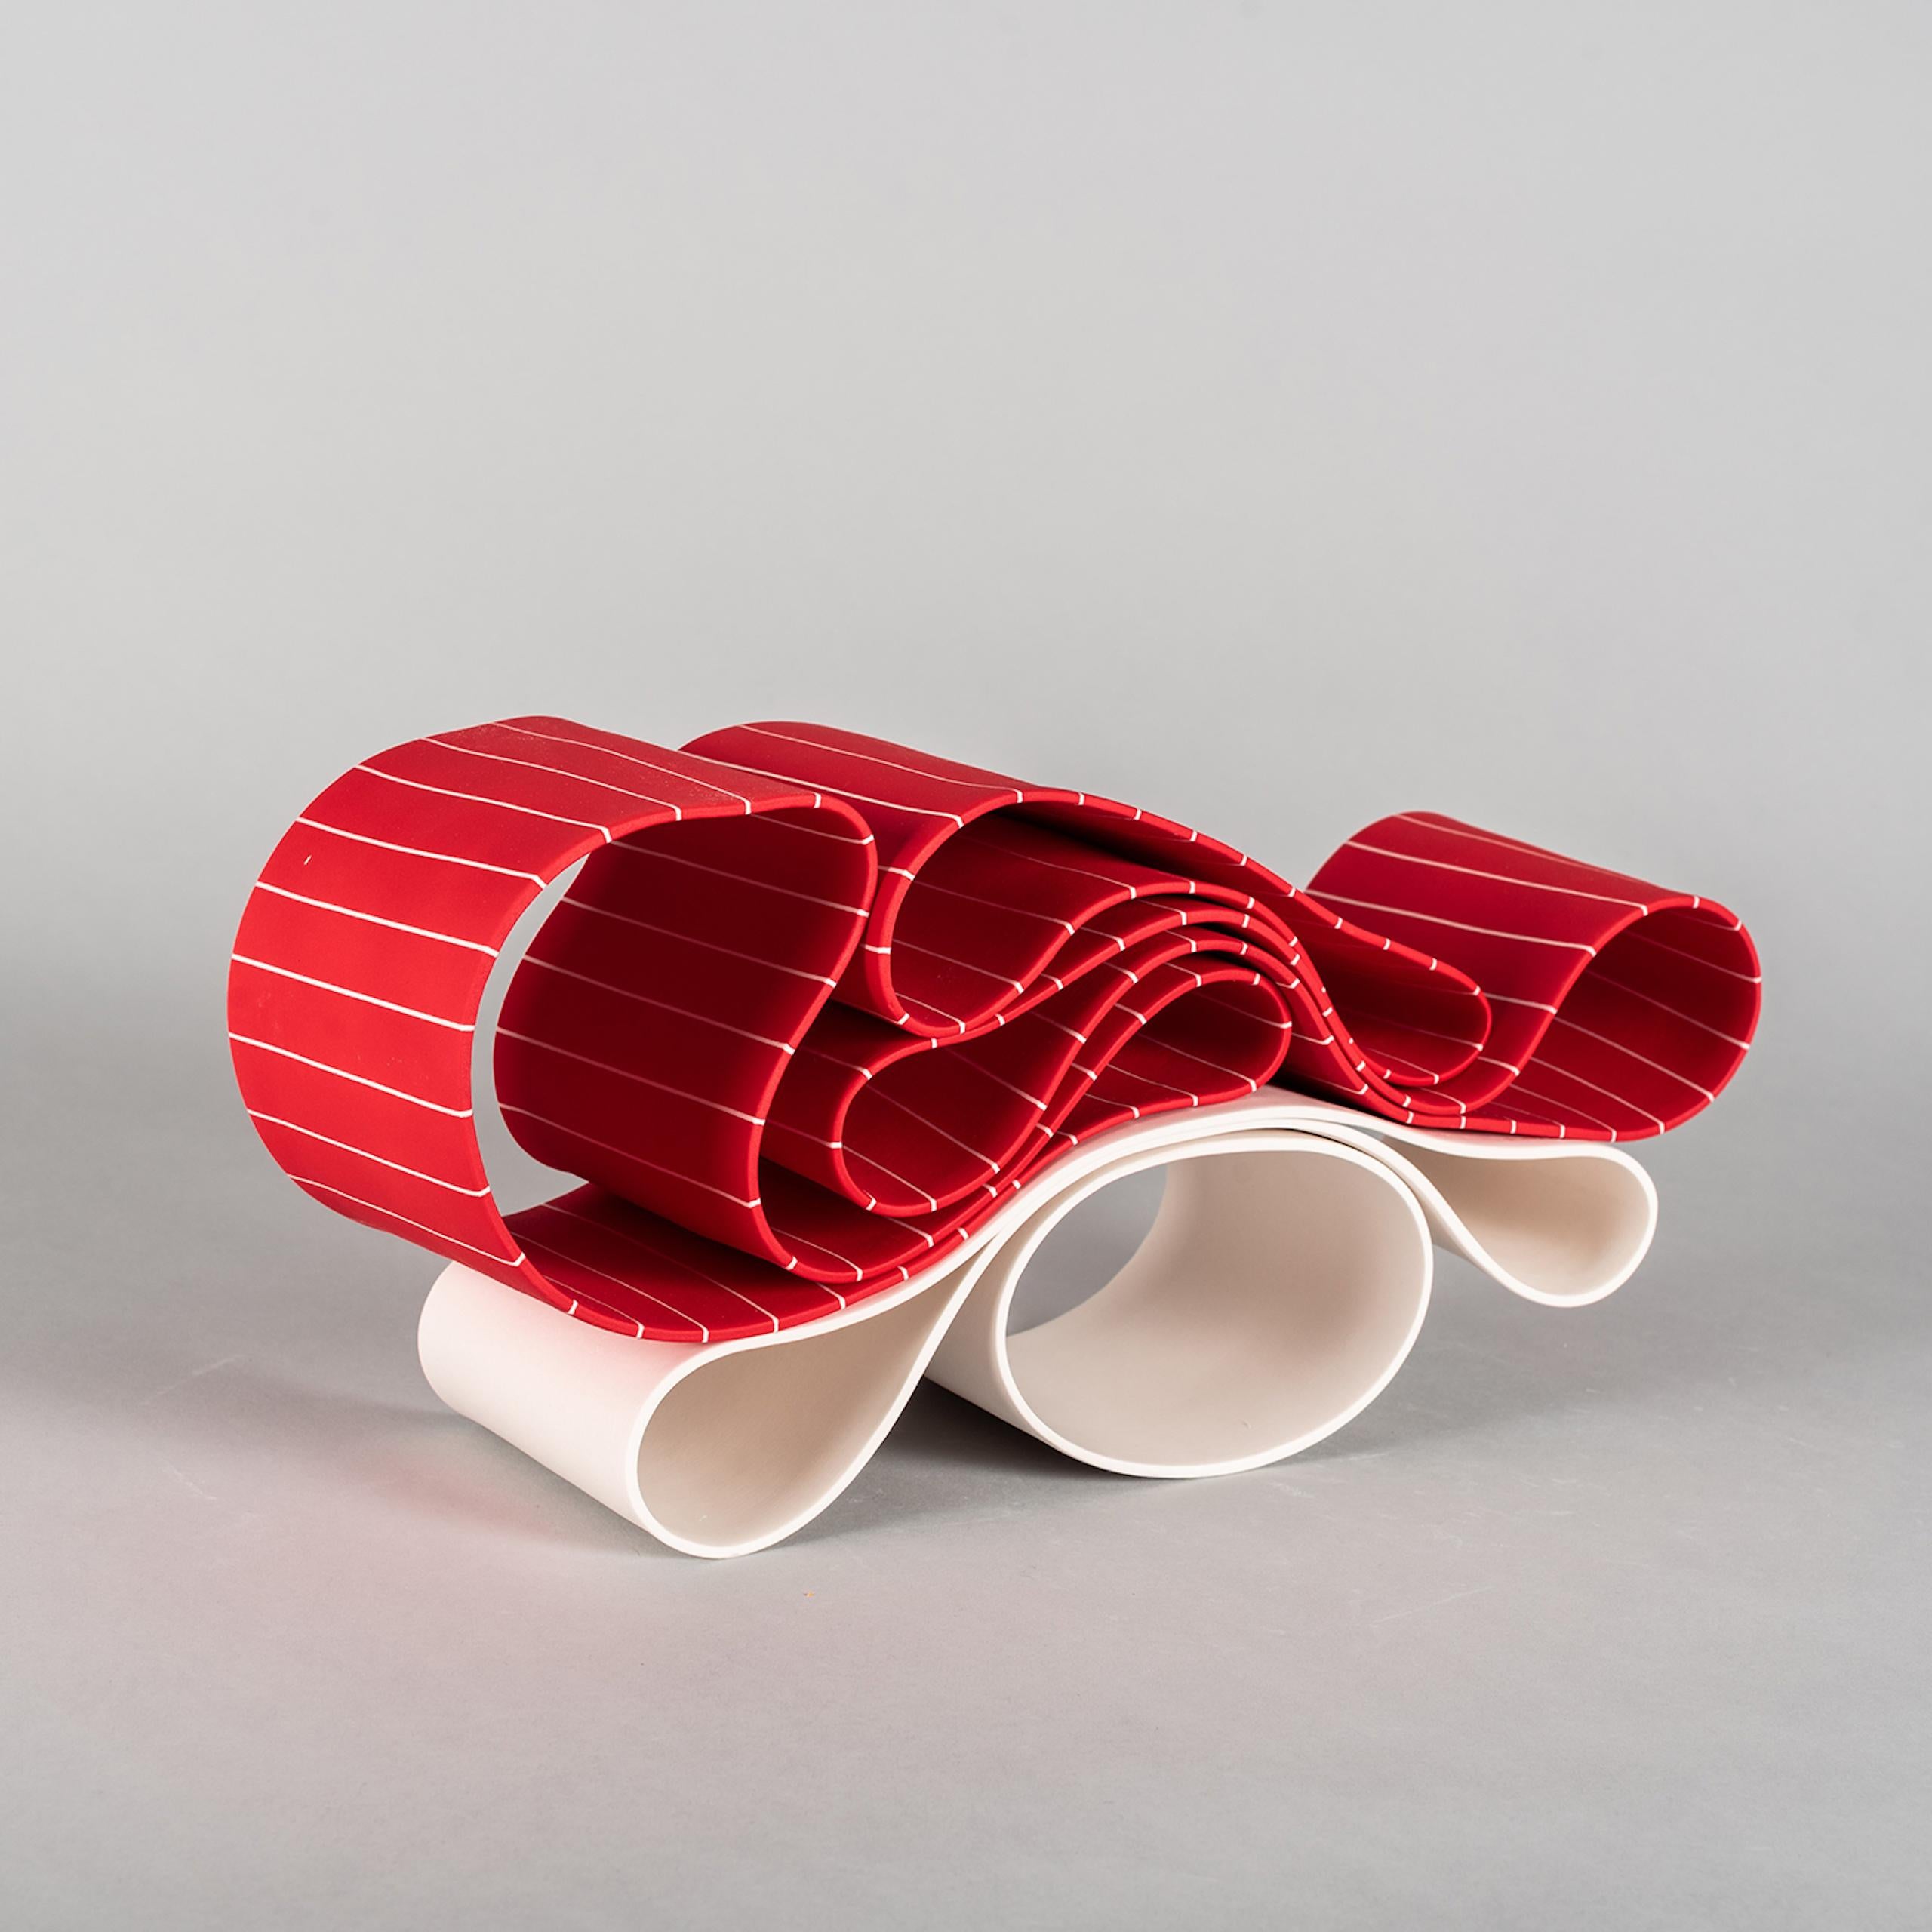 Folding in Motion 8 ist eine einzigartige Papier-Porzellan-Skulptur des zeitgenössischen Künstlers Simcha Even-Chen mit den Maßen 17 × 36 × 11 cm (6,7 × 14,2 × 4,3 in). 
Die Skulptur ist signiert und wird mit einem Echtheitszertifikat